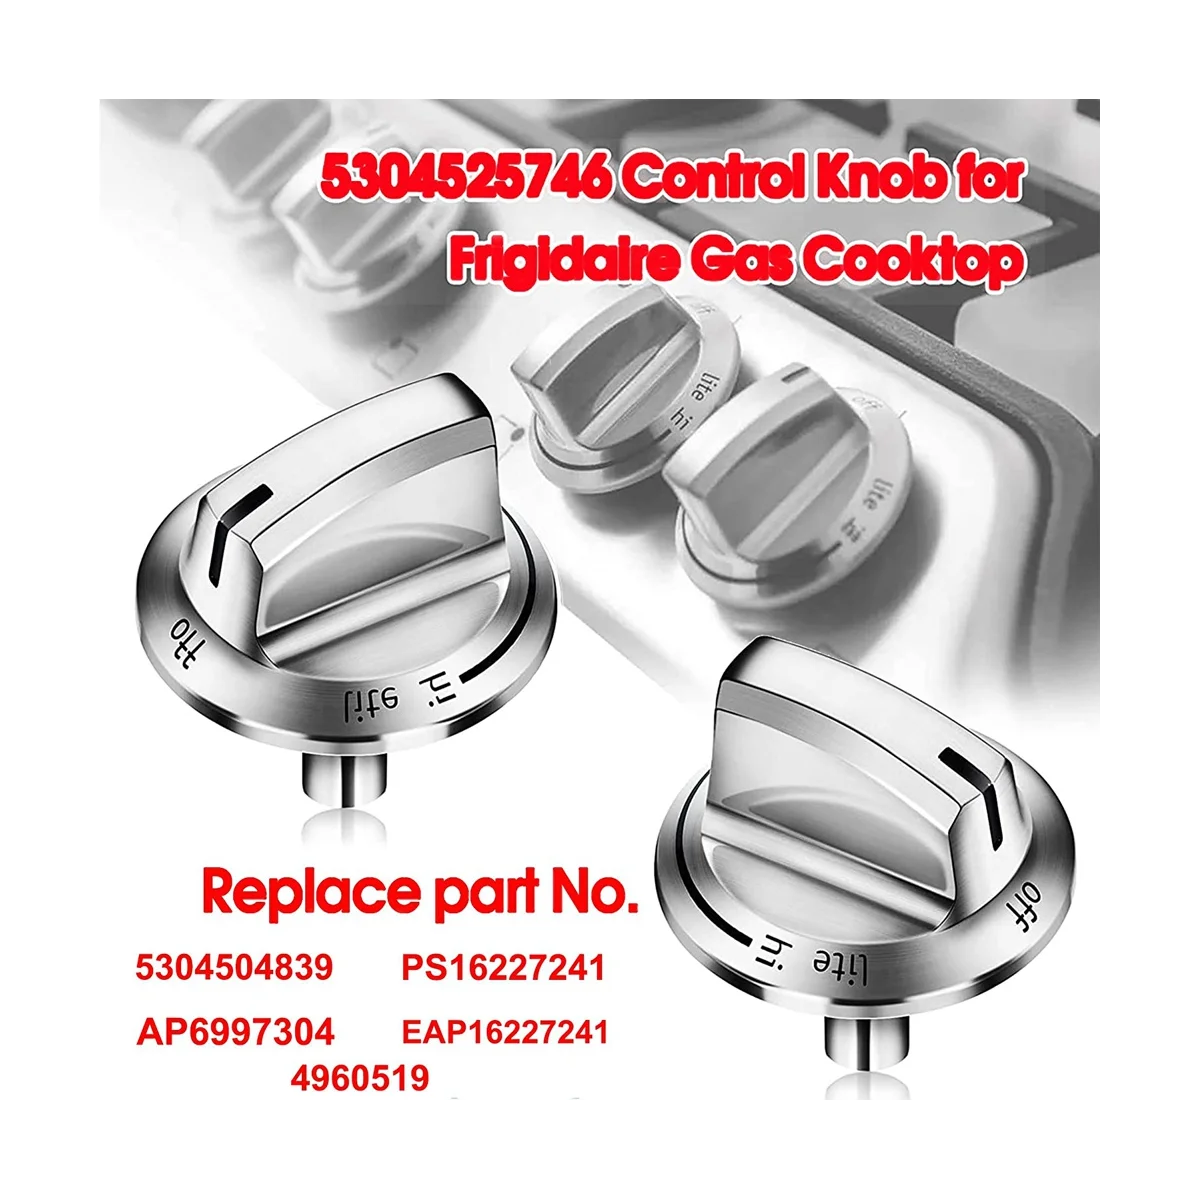 Botões do fogão a gás para geladeira, Gás Range Knobs, Botão do fogão a gás, Substituição Control Knobs, 5304525746, 5304504839, 5304525746